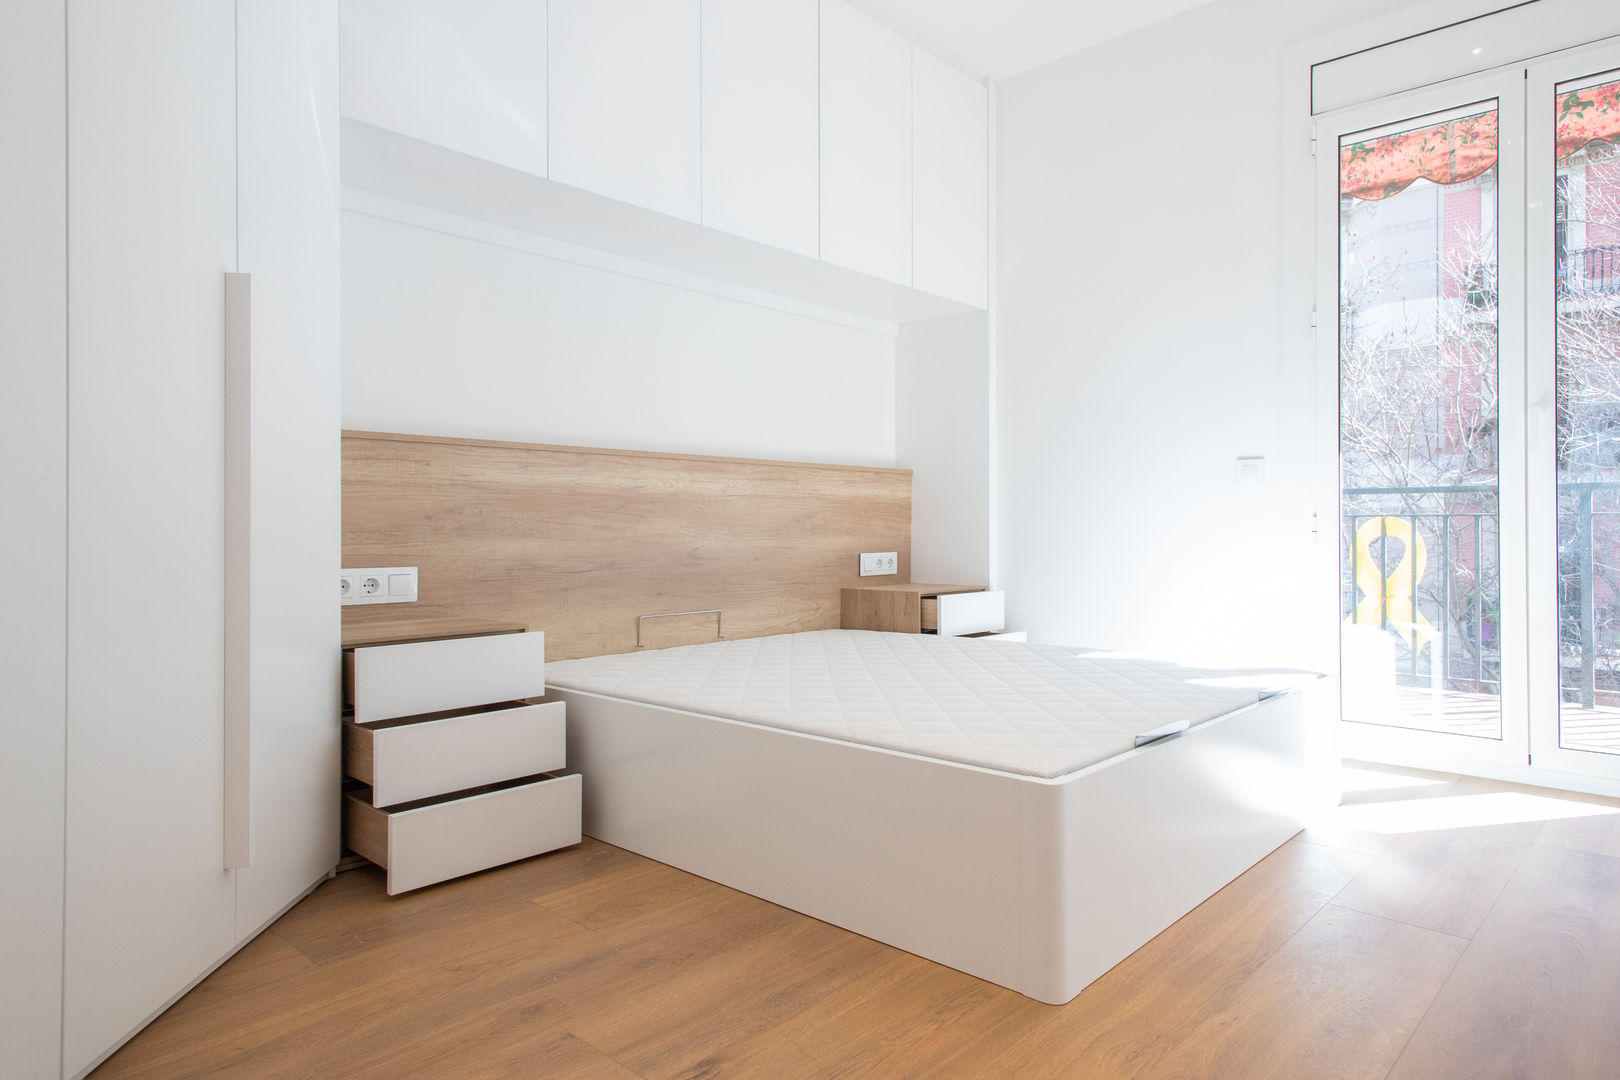 Proyecto de Interiorismo y mobiliario en Barcelona, Grupo Inventia Grupo Inventia Bedroom کنکریٹ